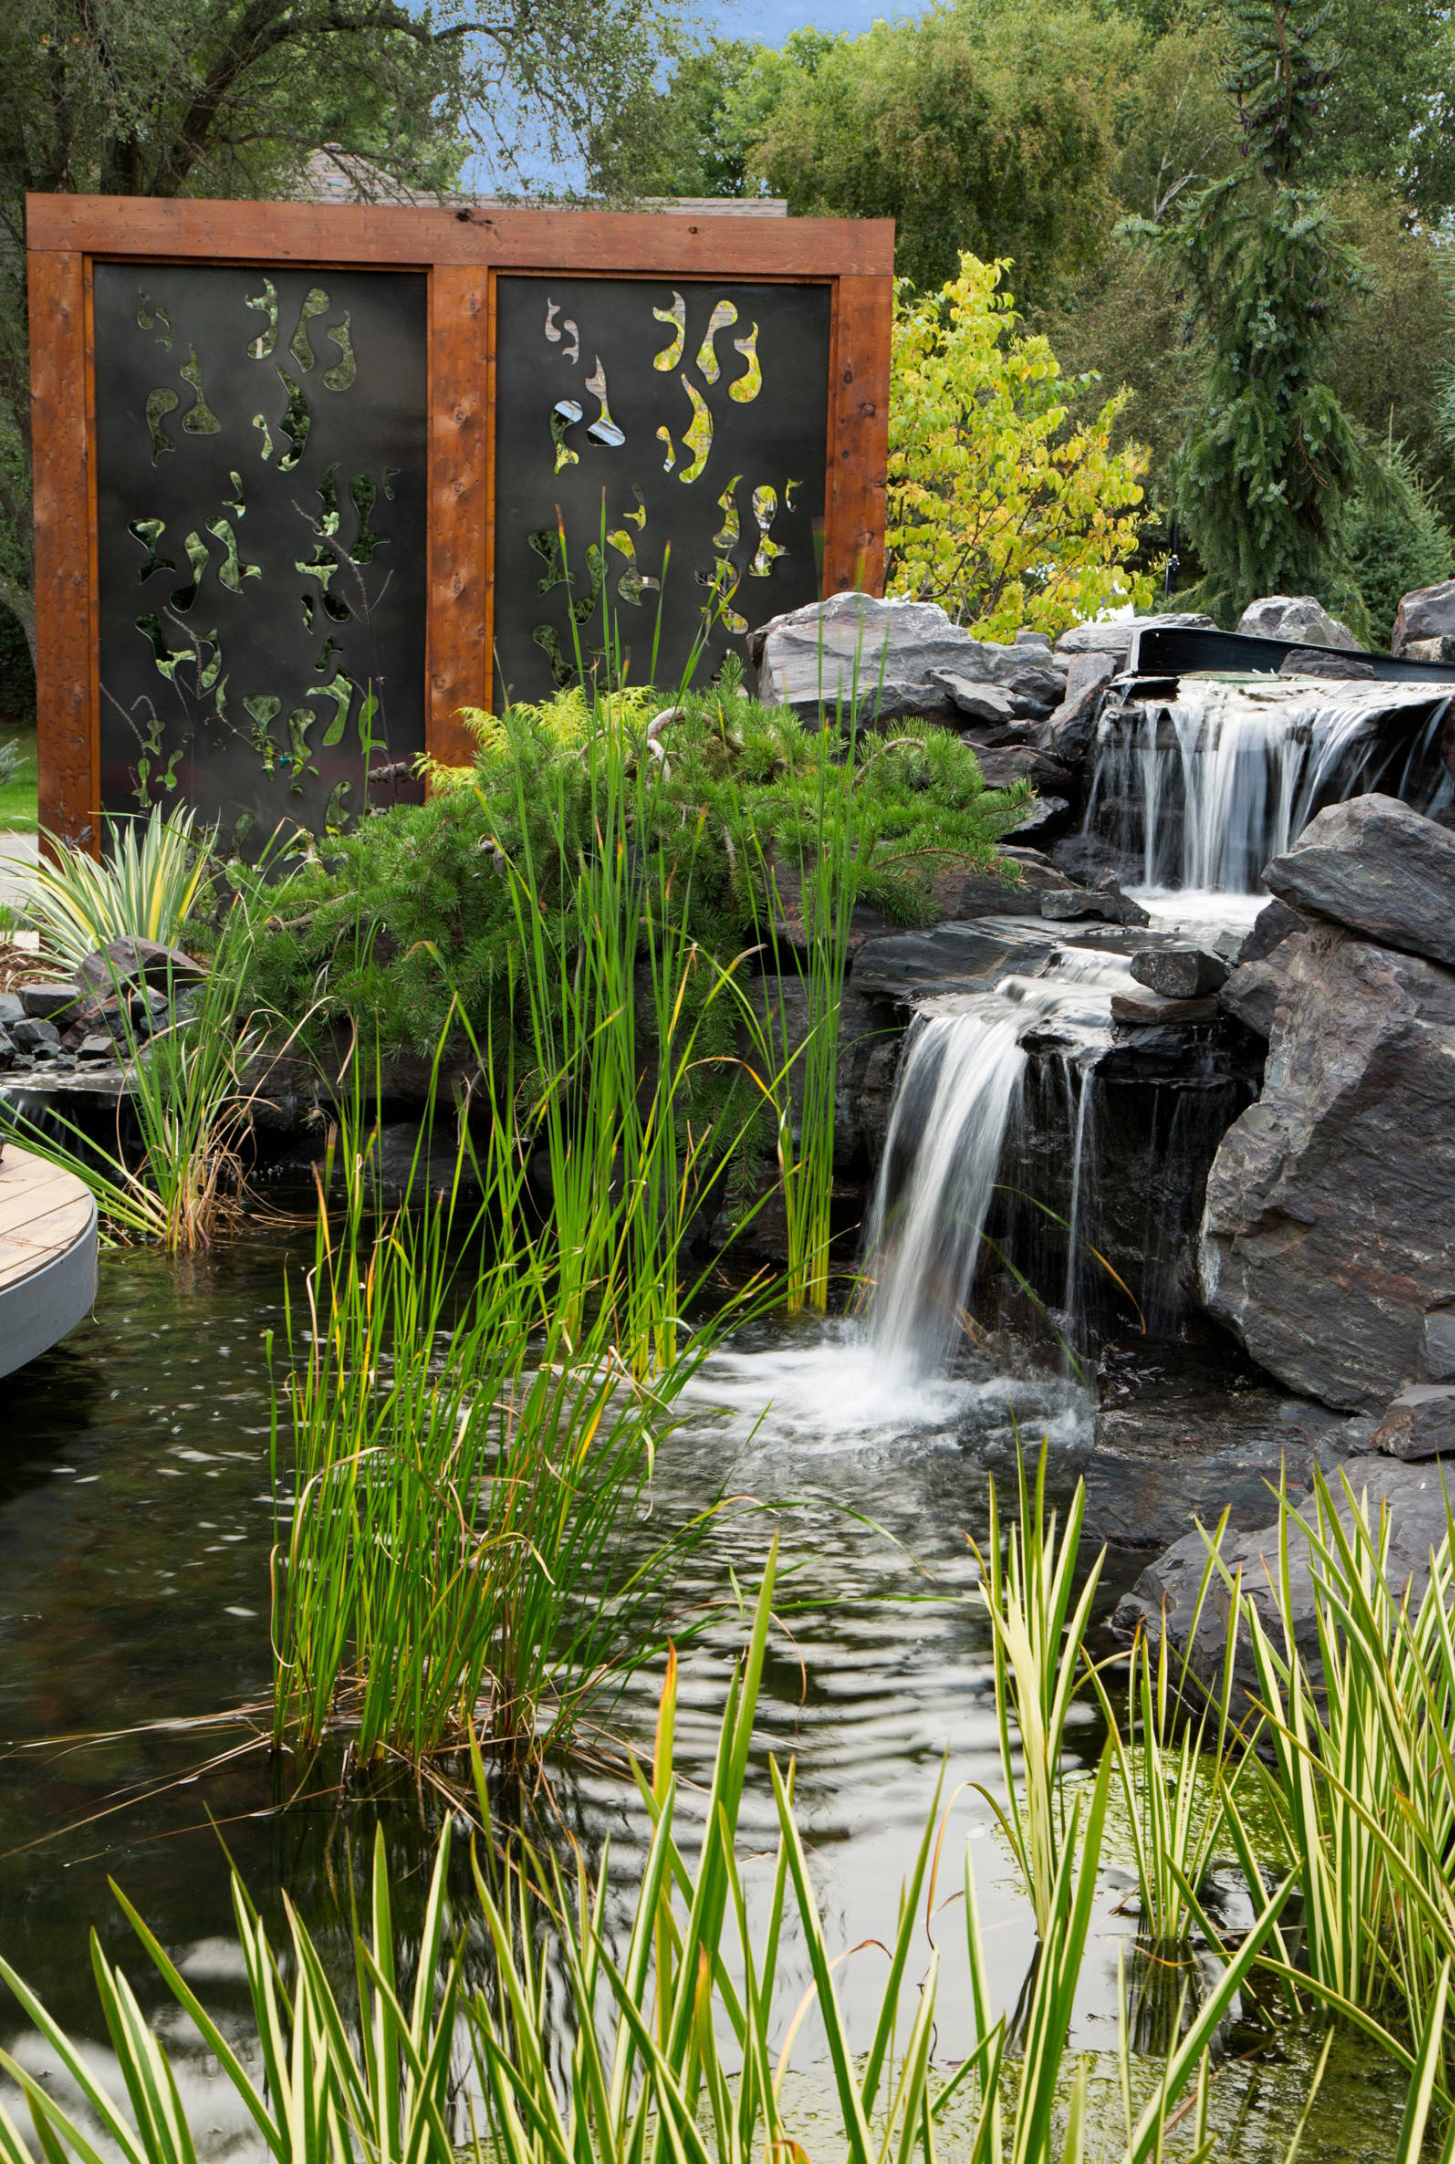 史上最美鱼池庭院,设计真的是把鱼池的美感做到了极致